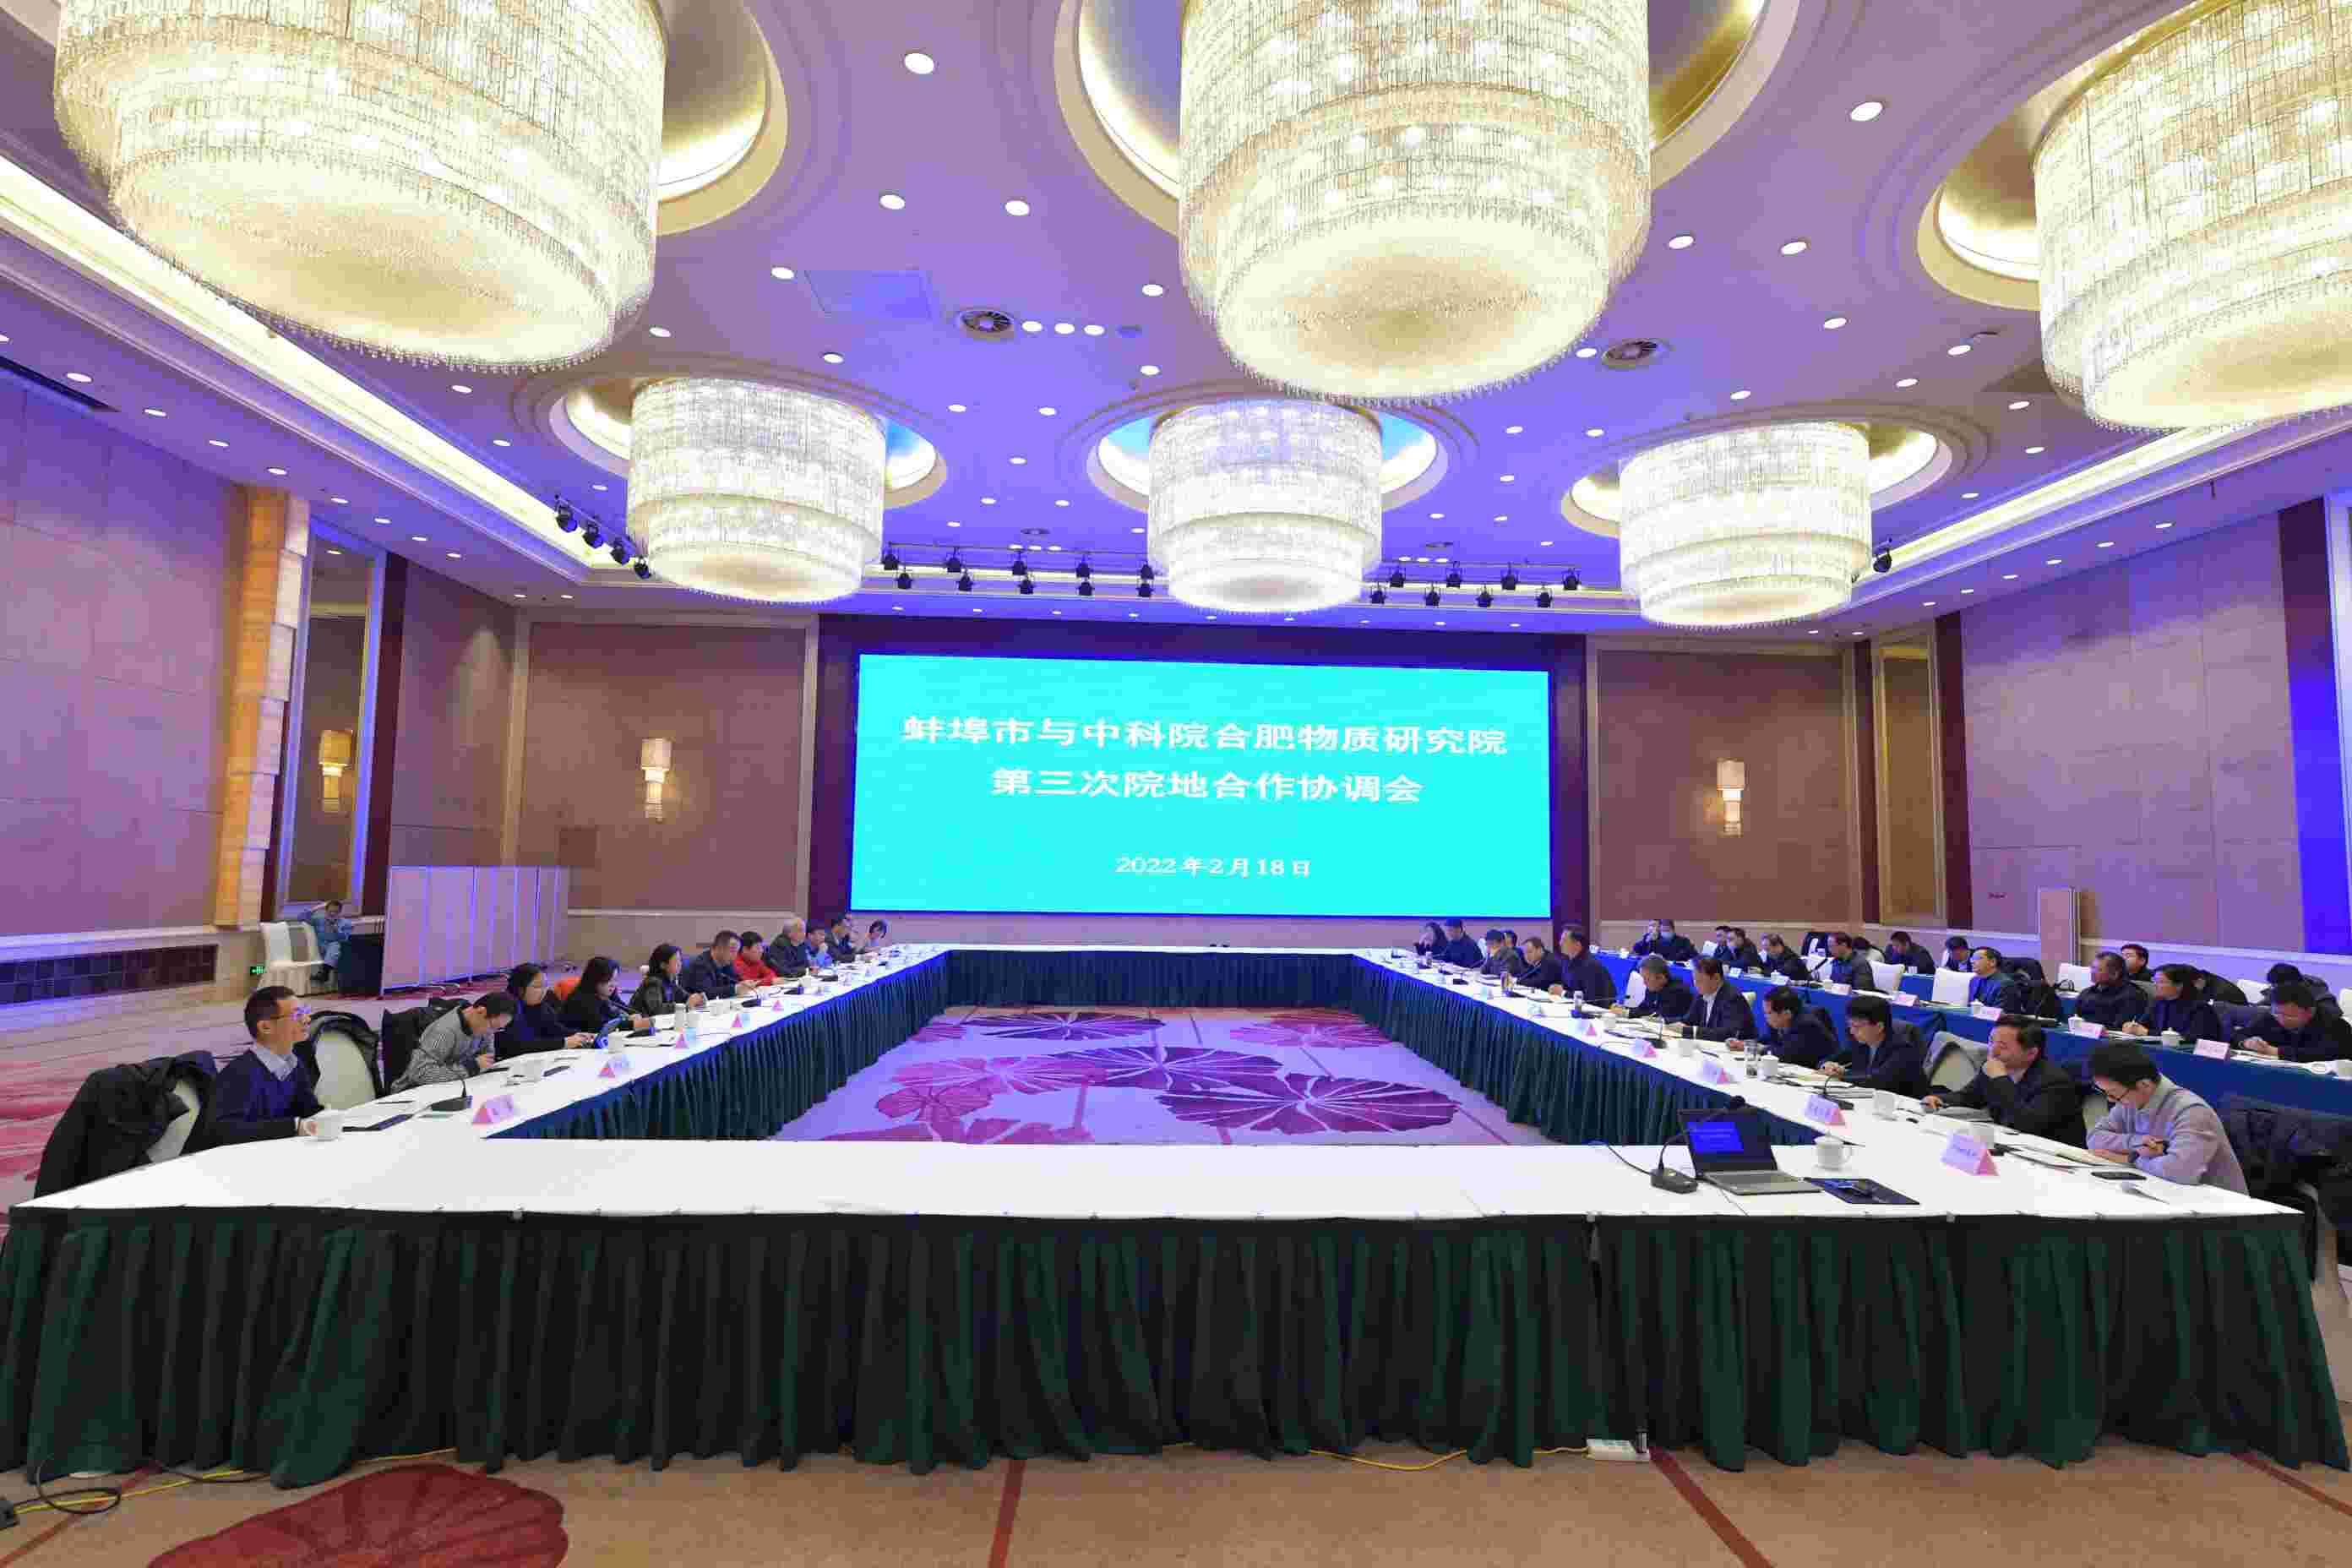 thành phố bengbu và viện khoa học vật lý hợp Phì , viện khoa học trung quốc cuộc họp hợp tác và phối hợp thứ ba giữa bệnh viện và cộng đồng địa phương đã được tổ chức tại Bắc Kinh